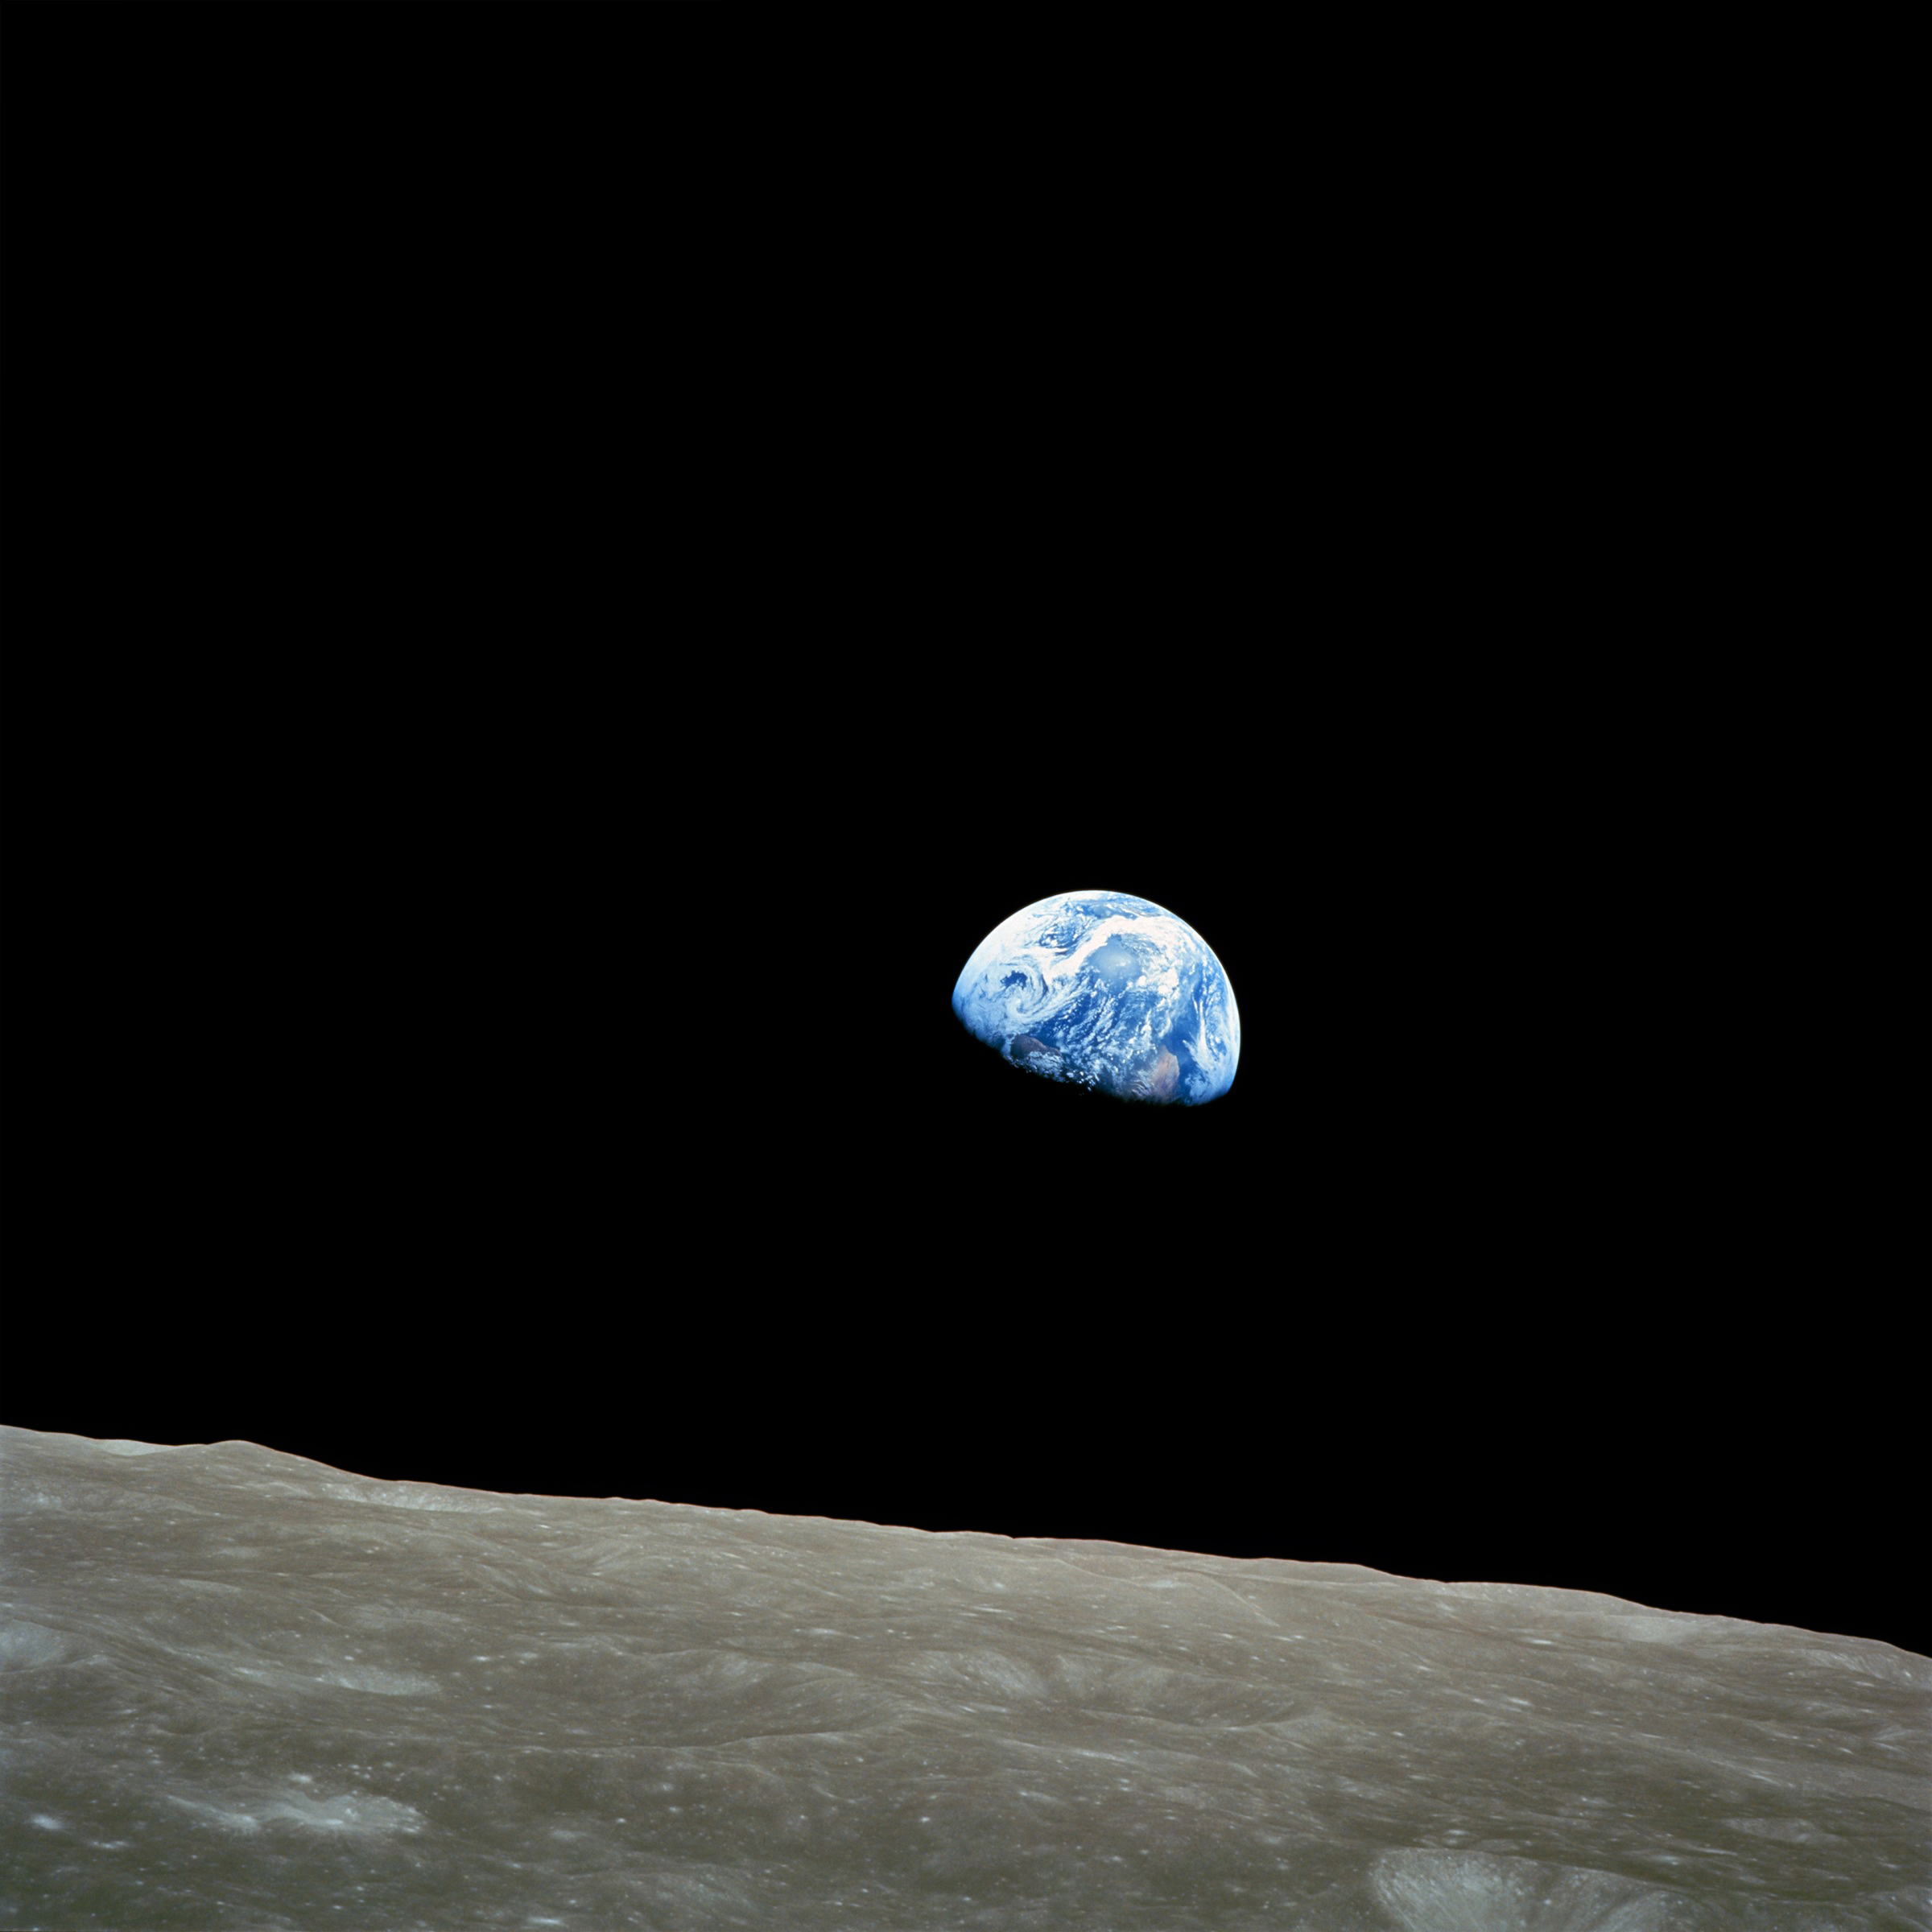 Earthrise (Wschód Ziemi) – zdjęcie Ziemi wynurzającej się zza horyzontu Księżyca wykonane 24 grudnia 1968 r. podczas misji Apollo 8. Źródło: NASA/Bill Anders